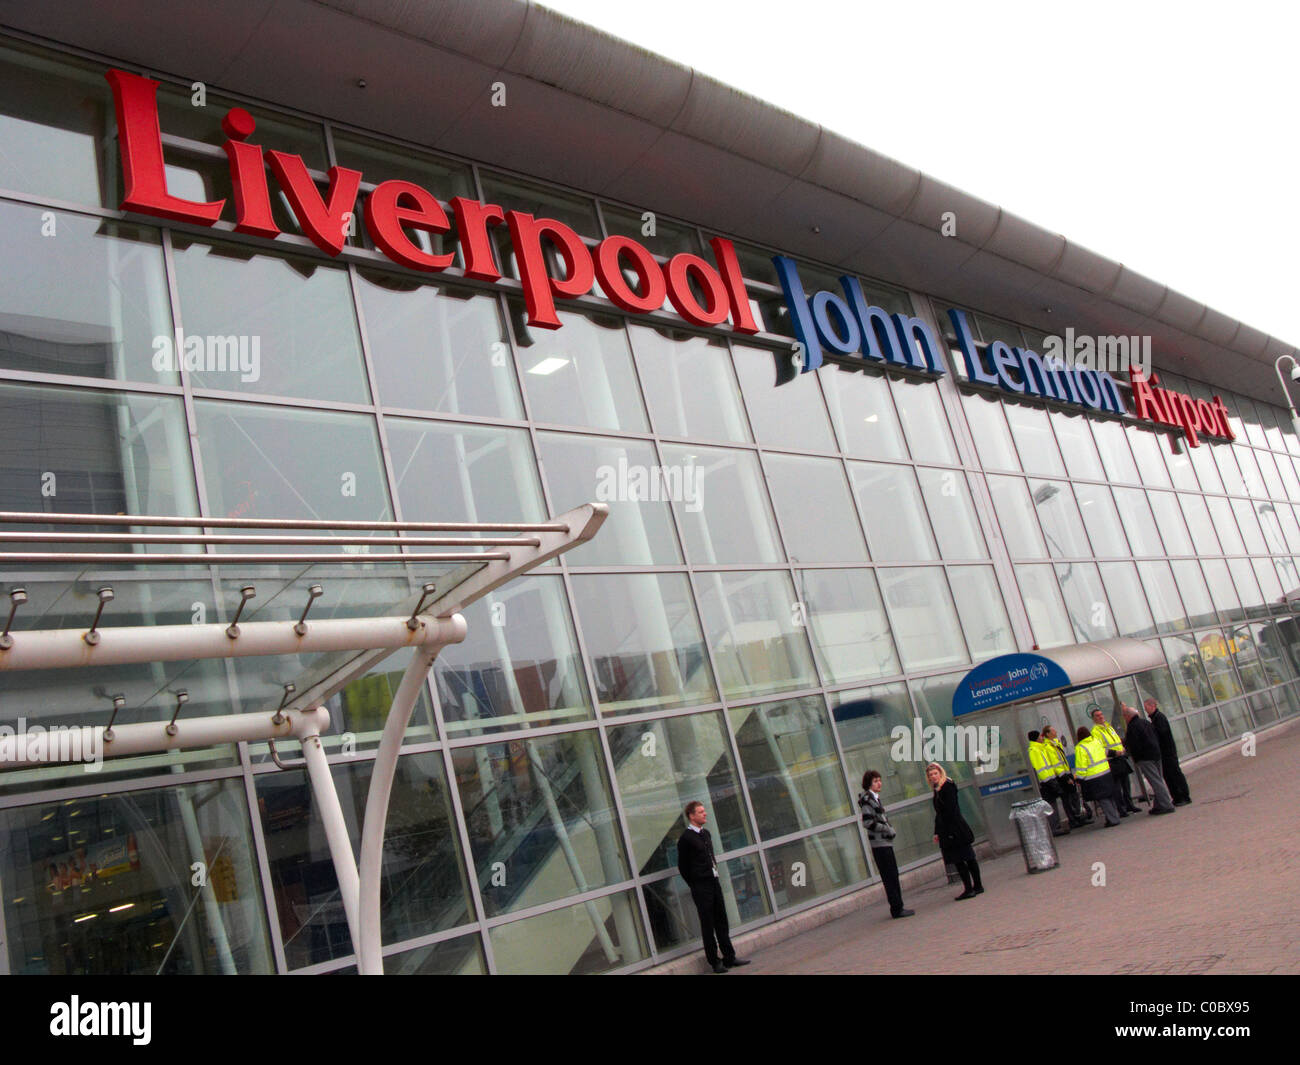 L'aéroport john Lennon de Liverpool Merseyside uk Banque D'Images